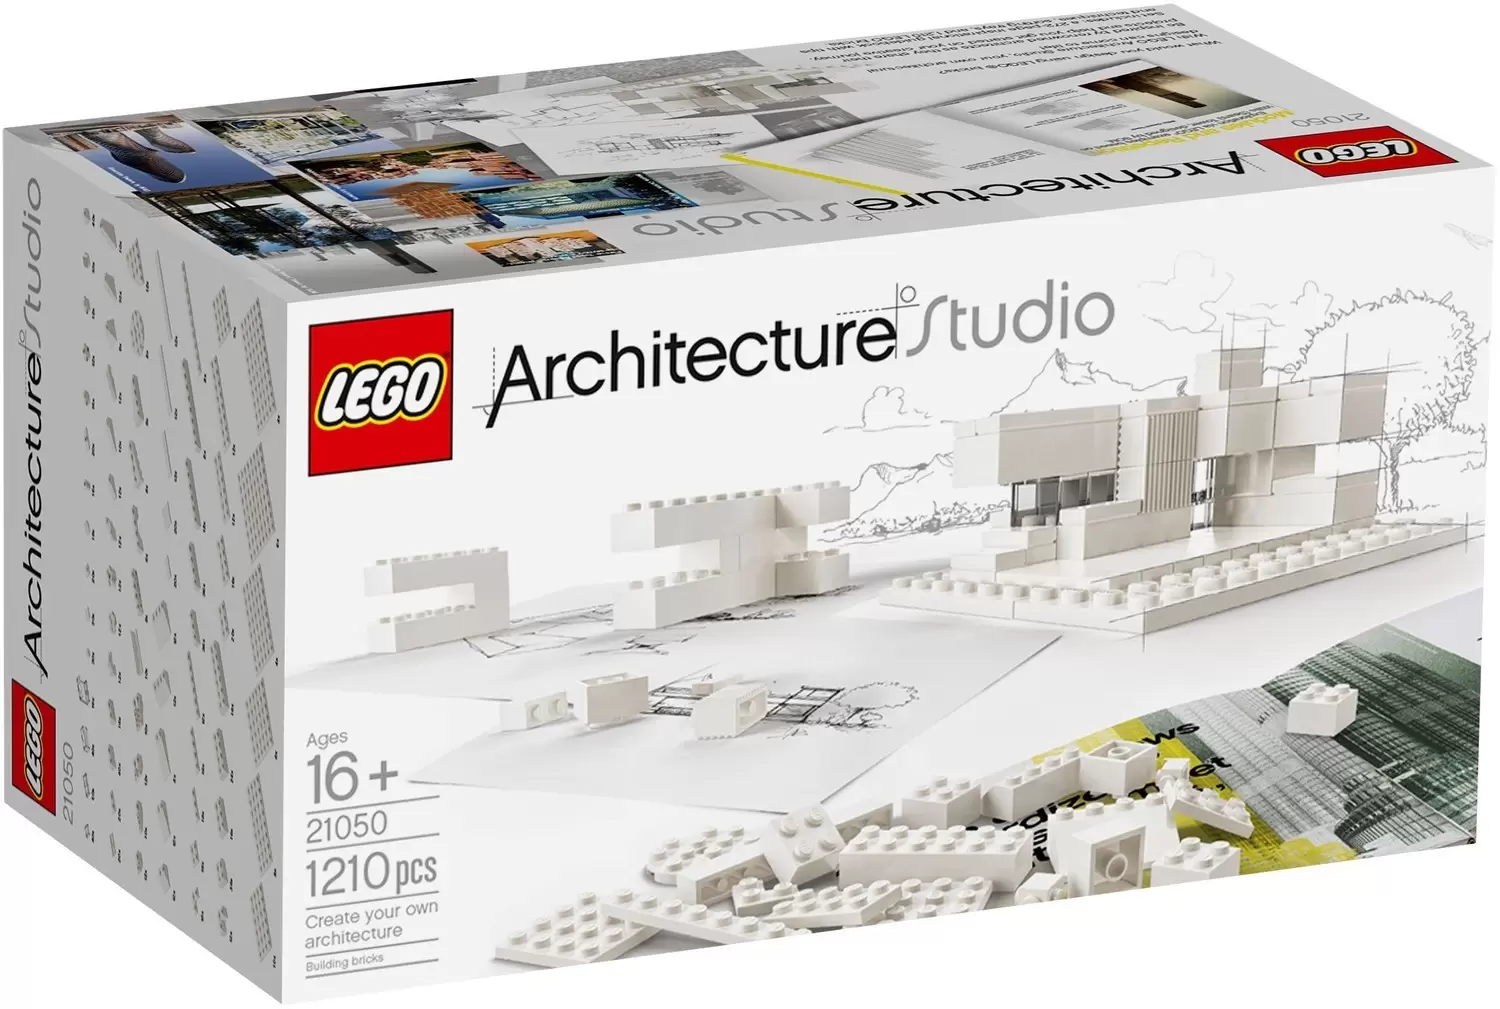 LEGO Architecture - Architecture Studio